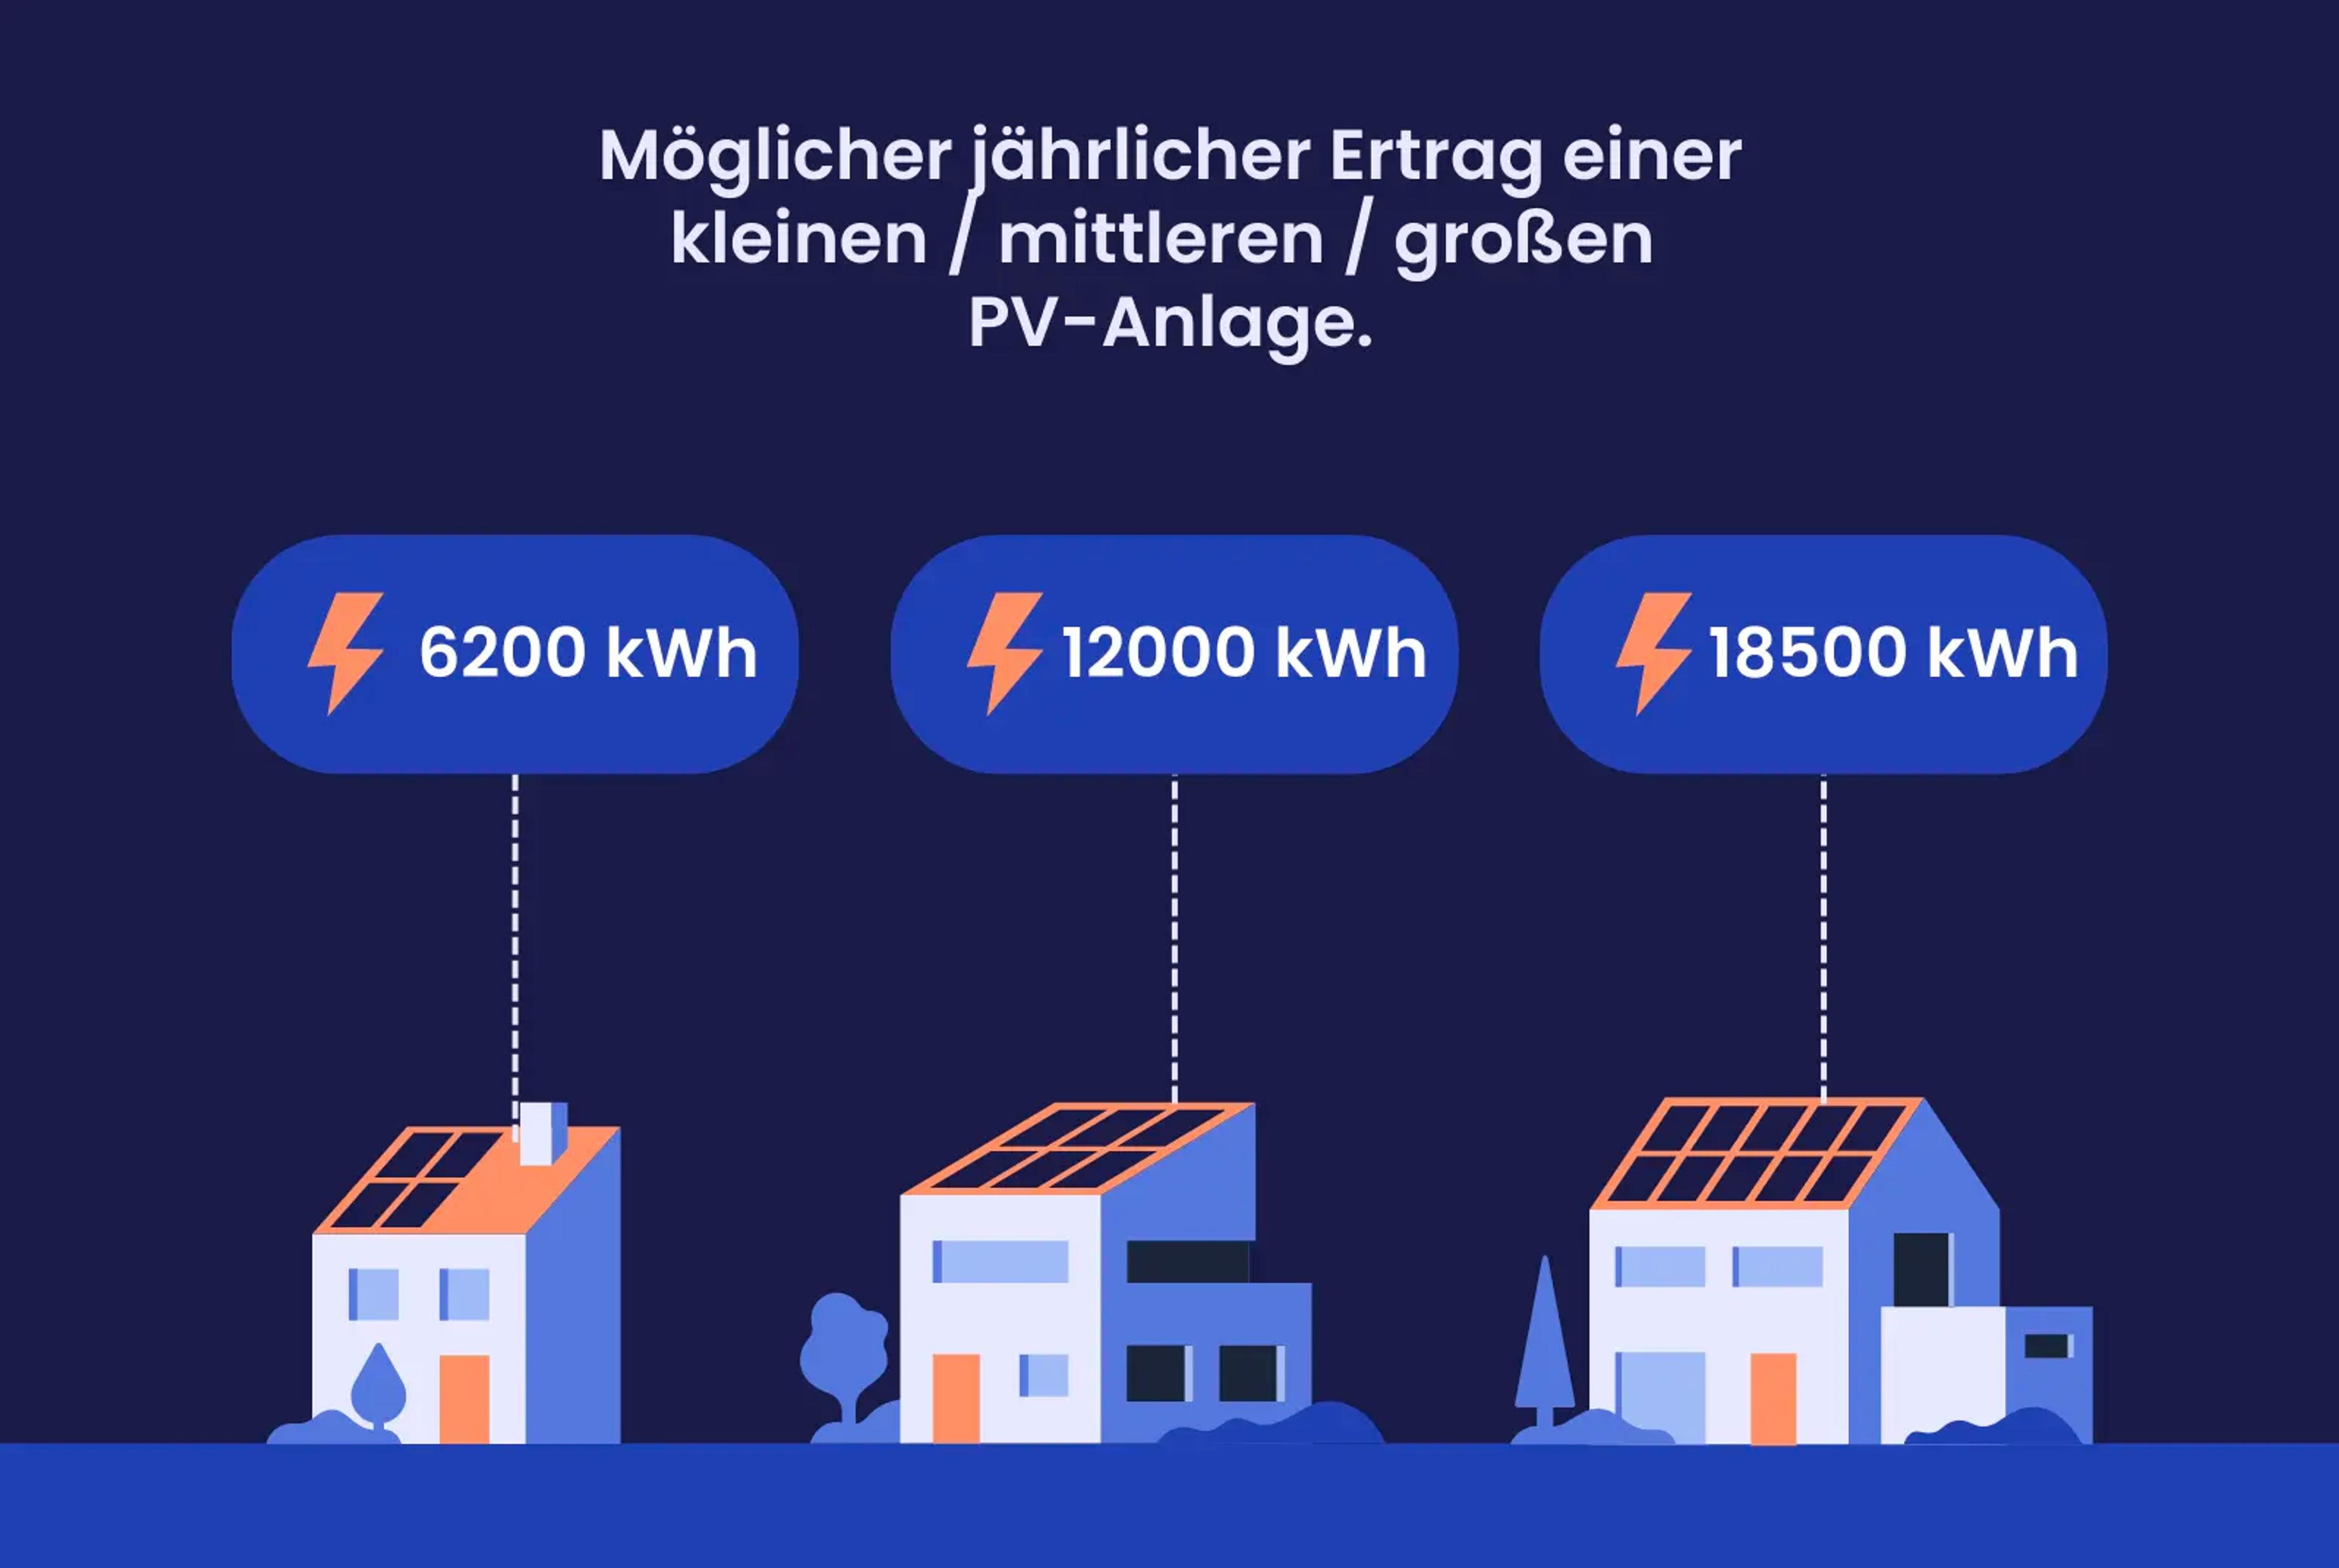 Eine Grafik, die zeigt, wie viele kWh Solaranlagen in Hessen erzeugen können.